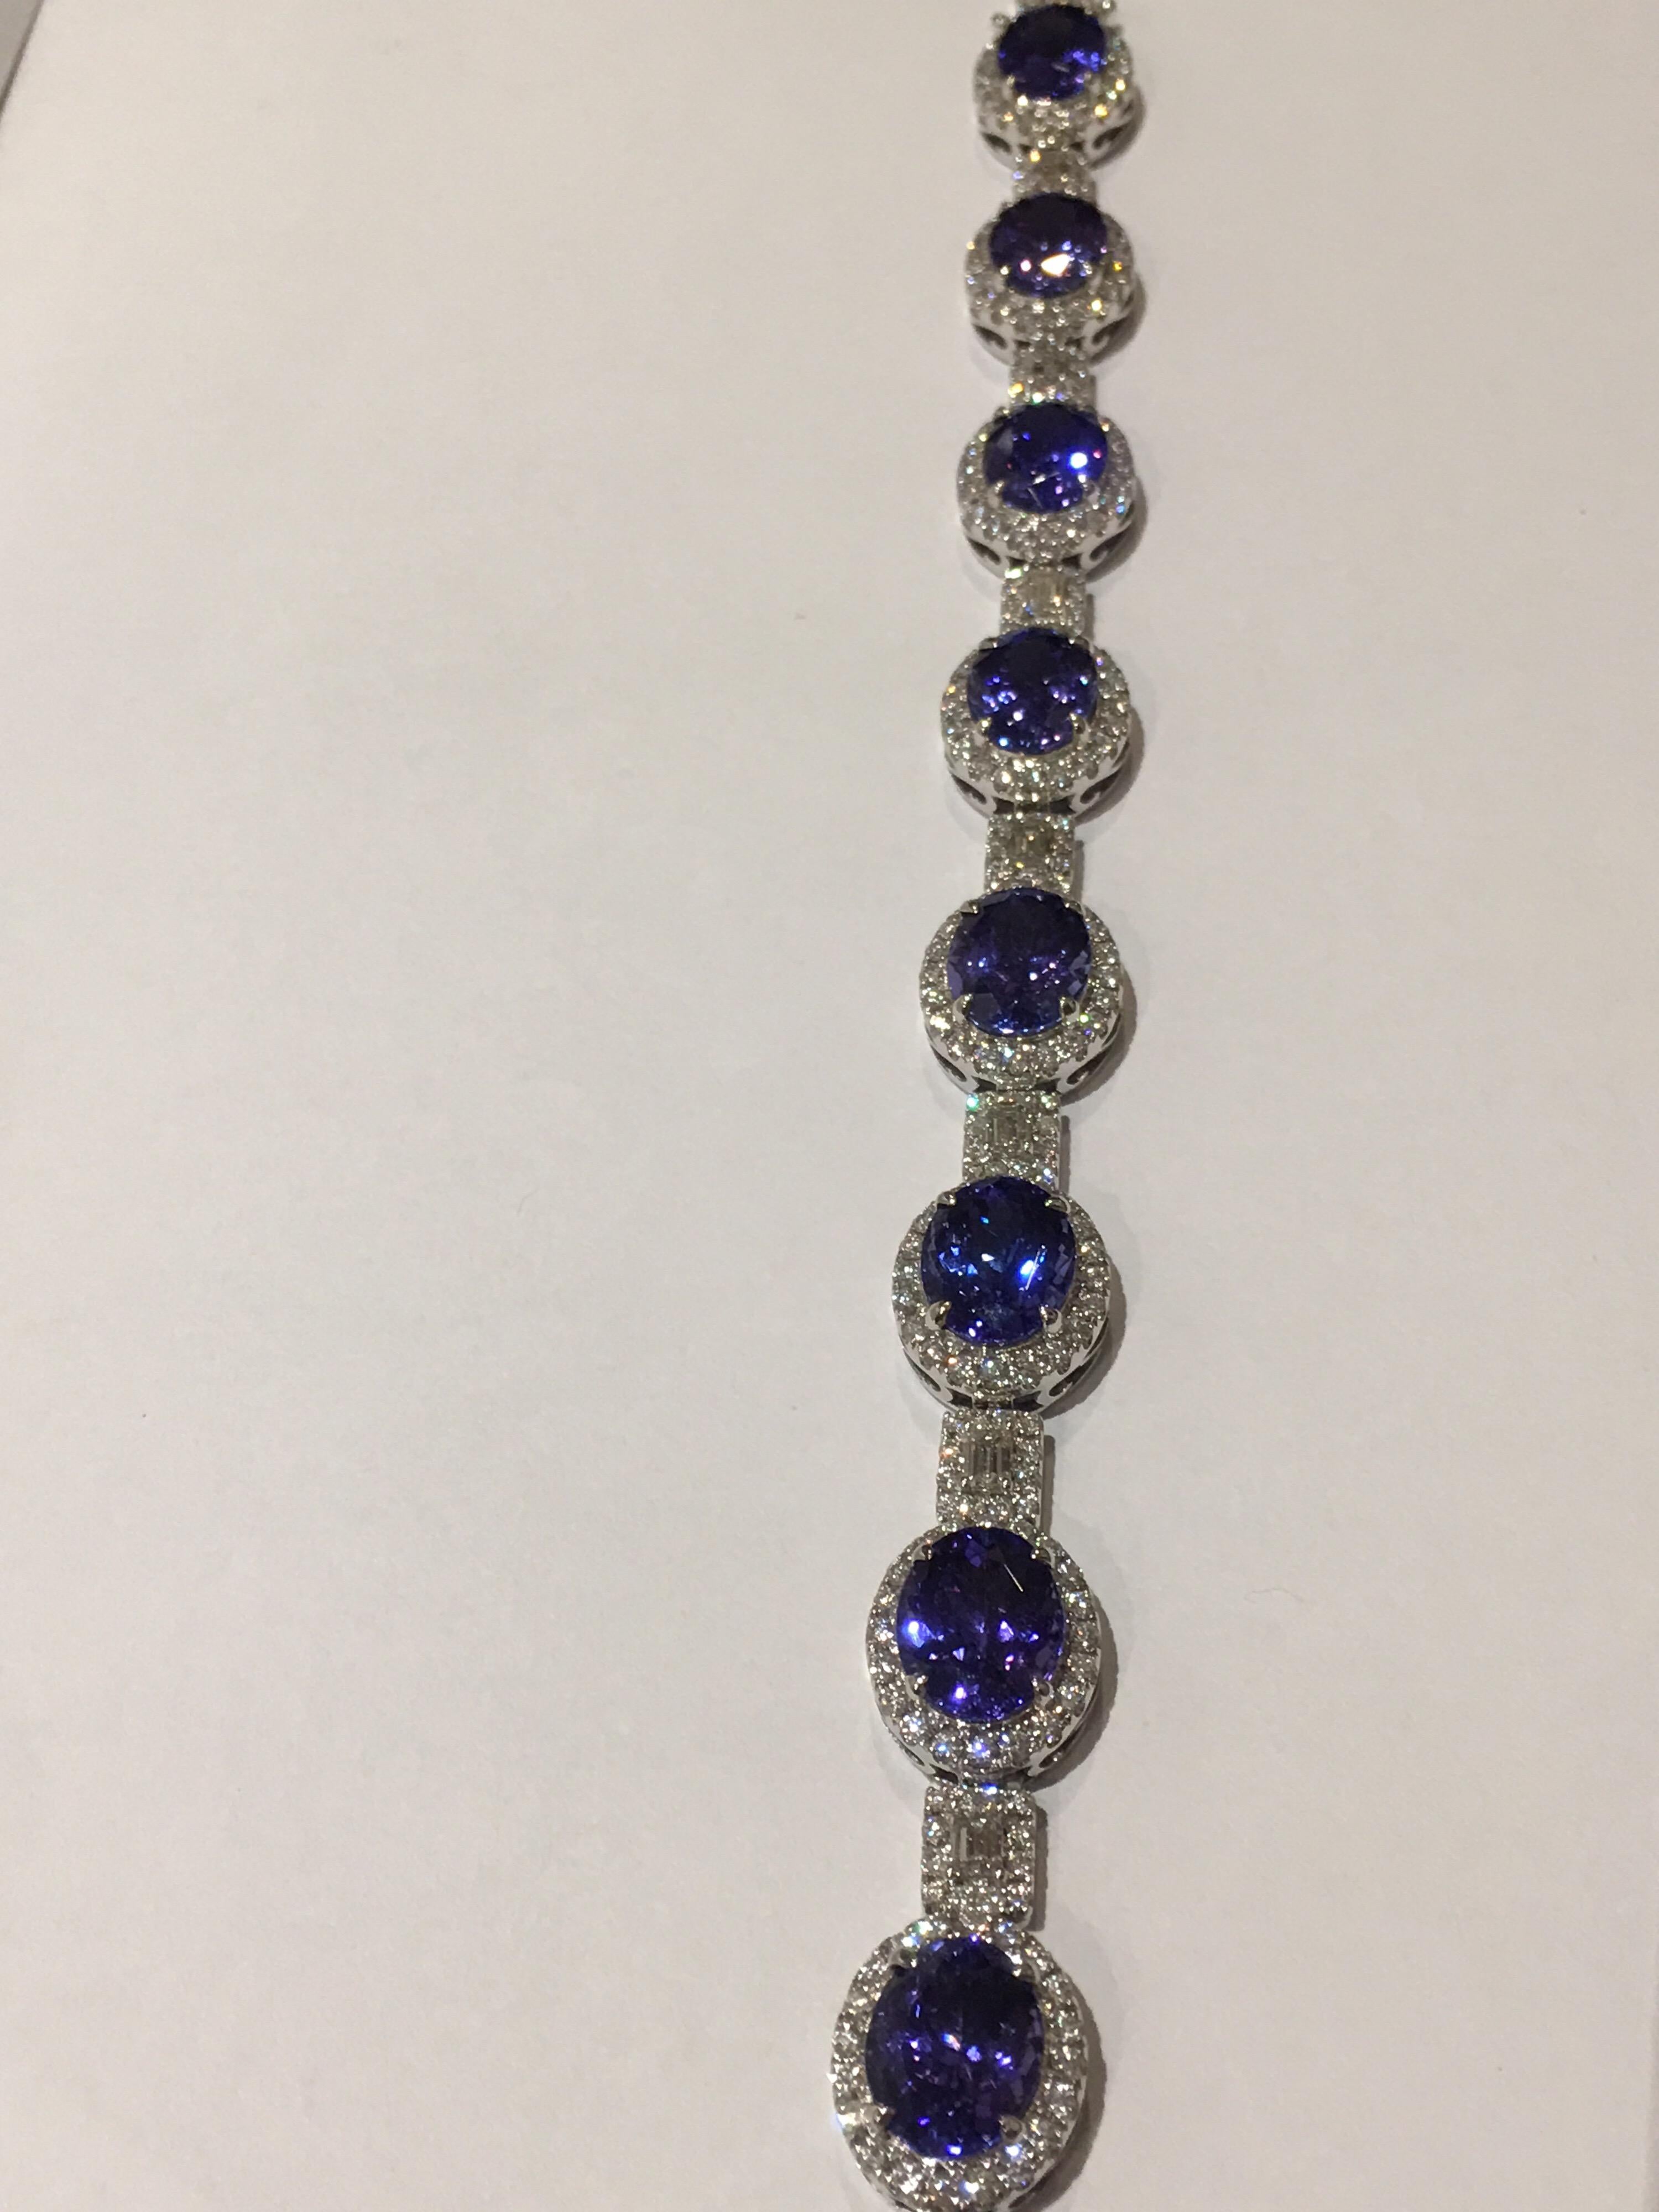 Alle angepassten AAA Royal Blue Ink Color Tanzanite sind handgefertigte Unikate.
Das Armband ist aus wunderschönen 31,81 Karat gefertigt  Tansanit und 5,37 Rund- und Smaragdschliff dazwischen.
Das Armband ist aus 18K Weißgold gefertigt.